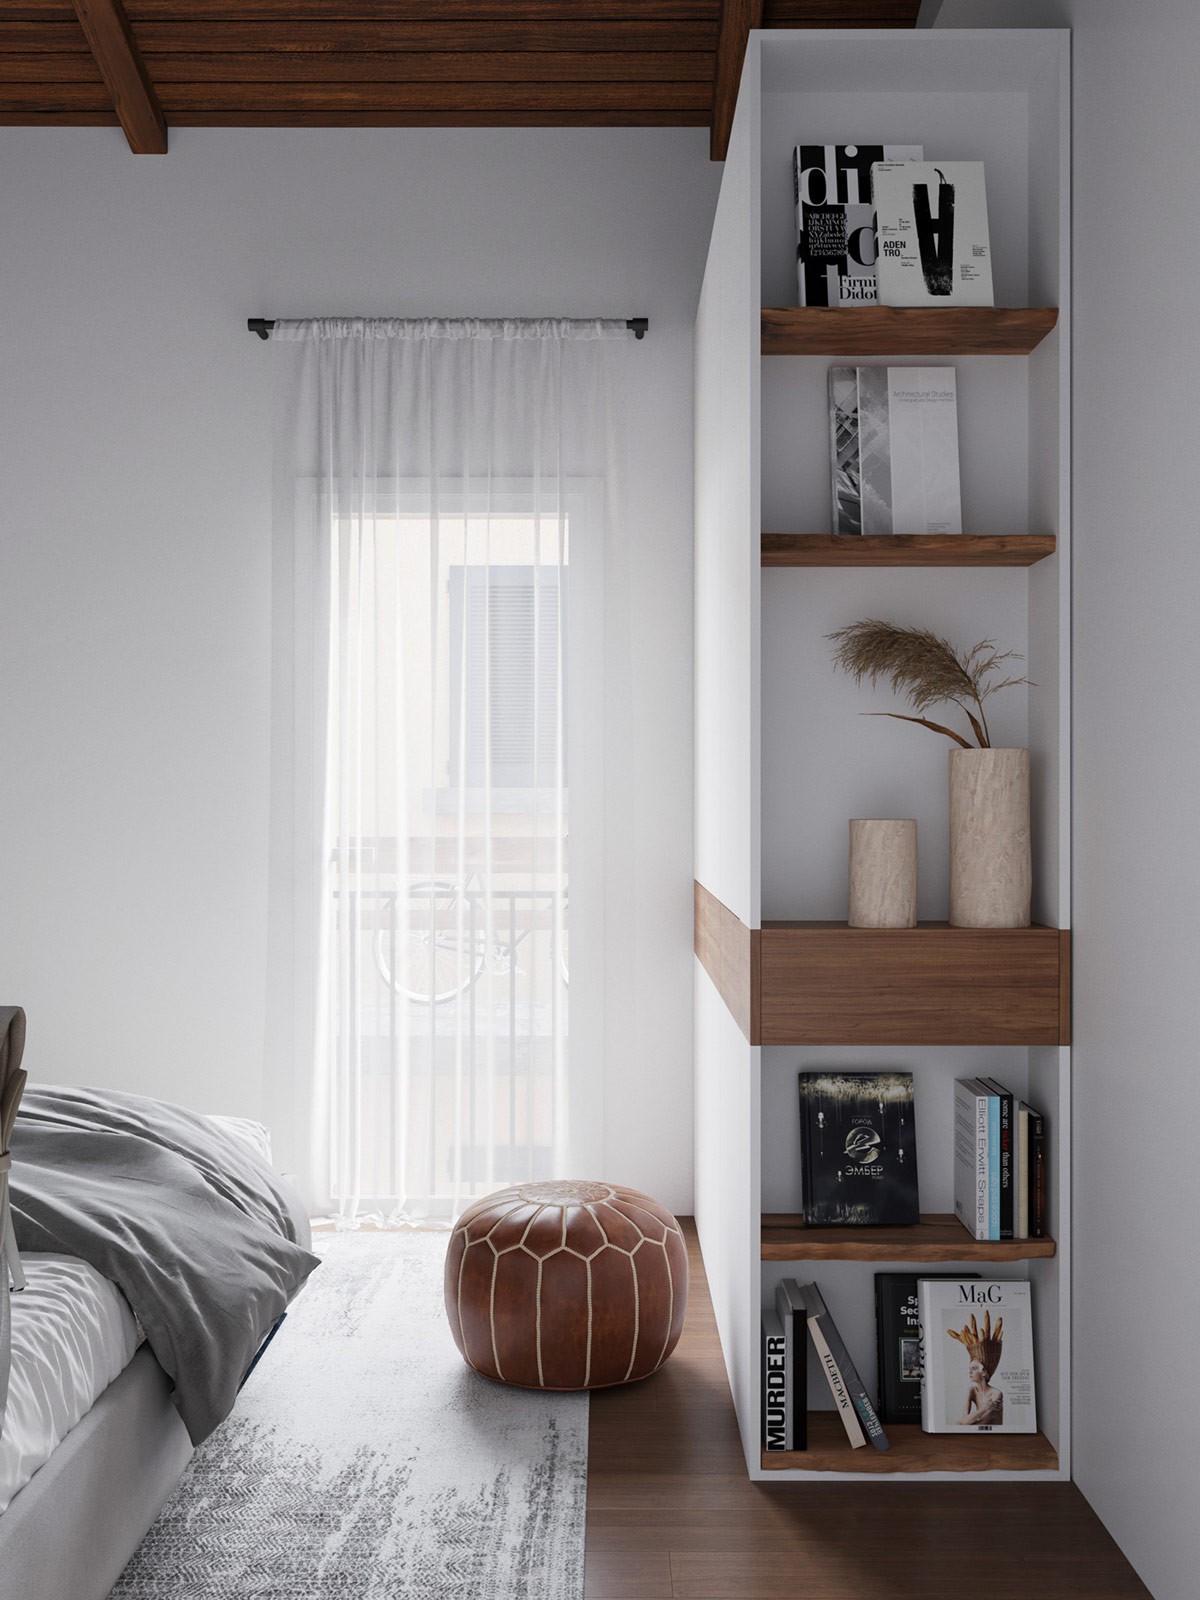 Hình ảnh góc thư giãn trong phòng ngủ với giá sách âm tường, ghế bọc nệm màu nâu, cửa sổ kính